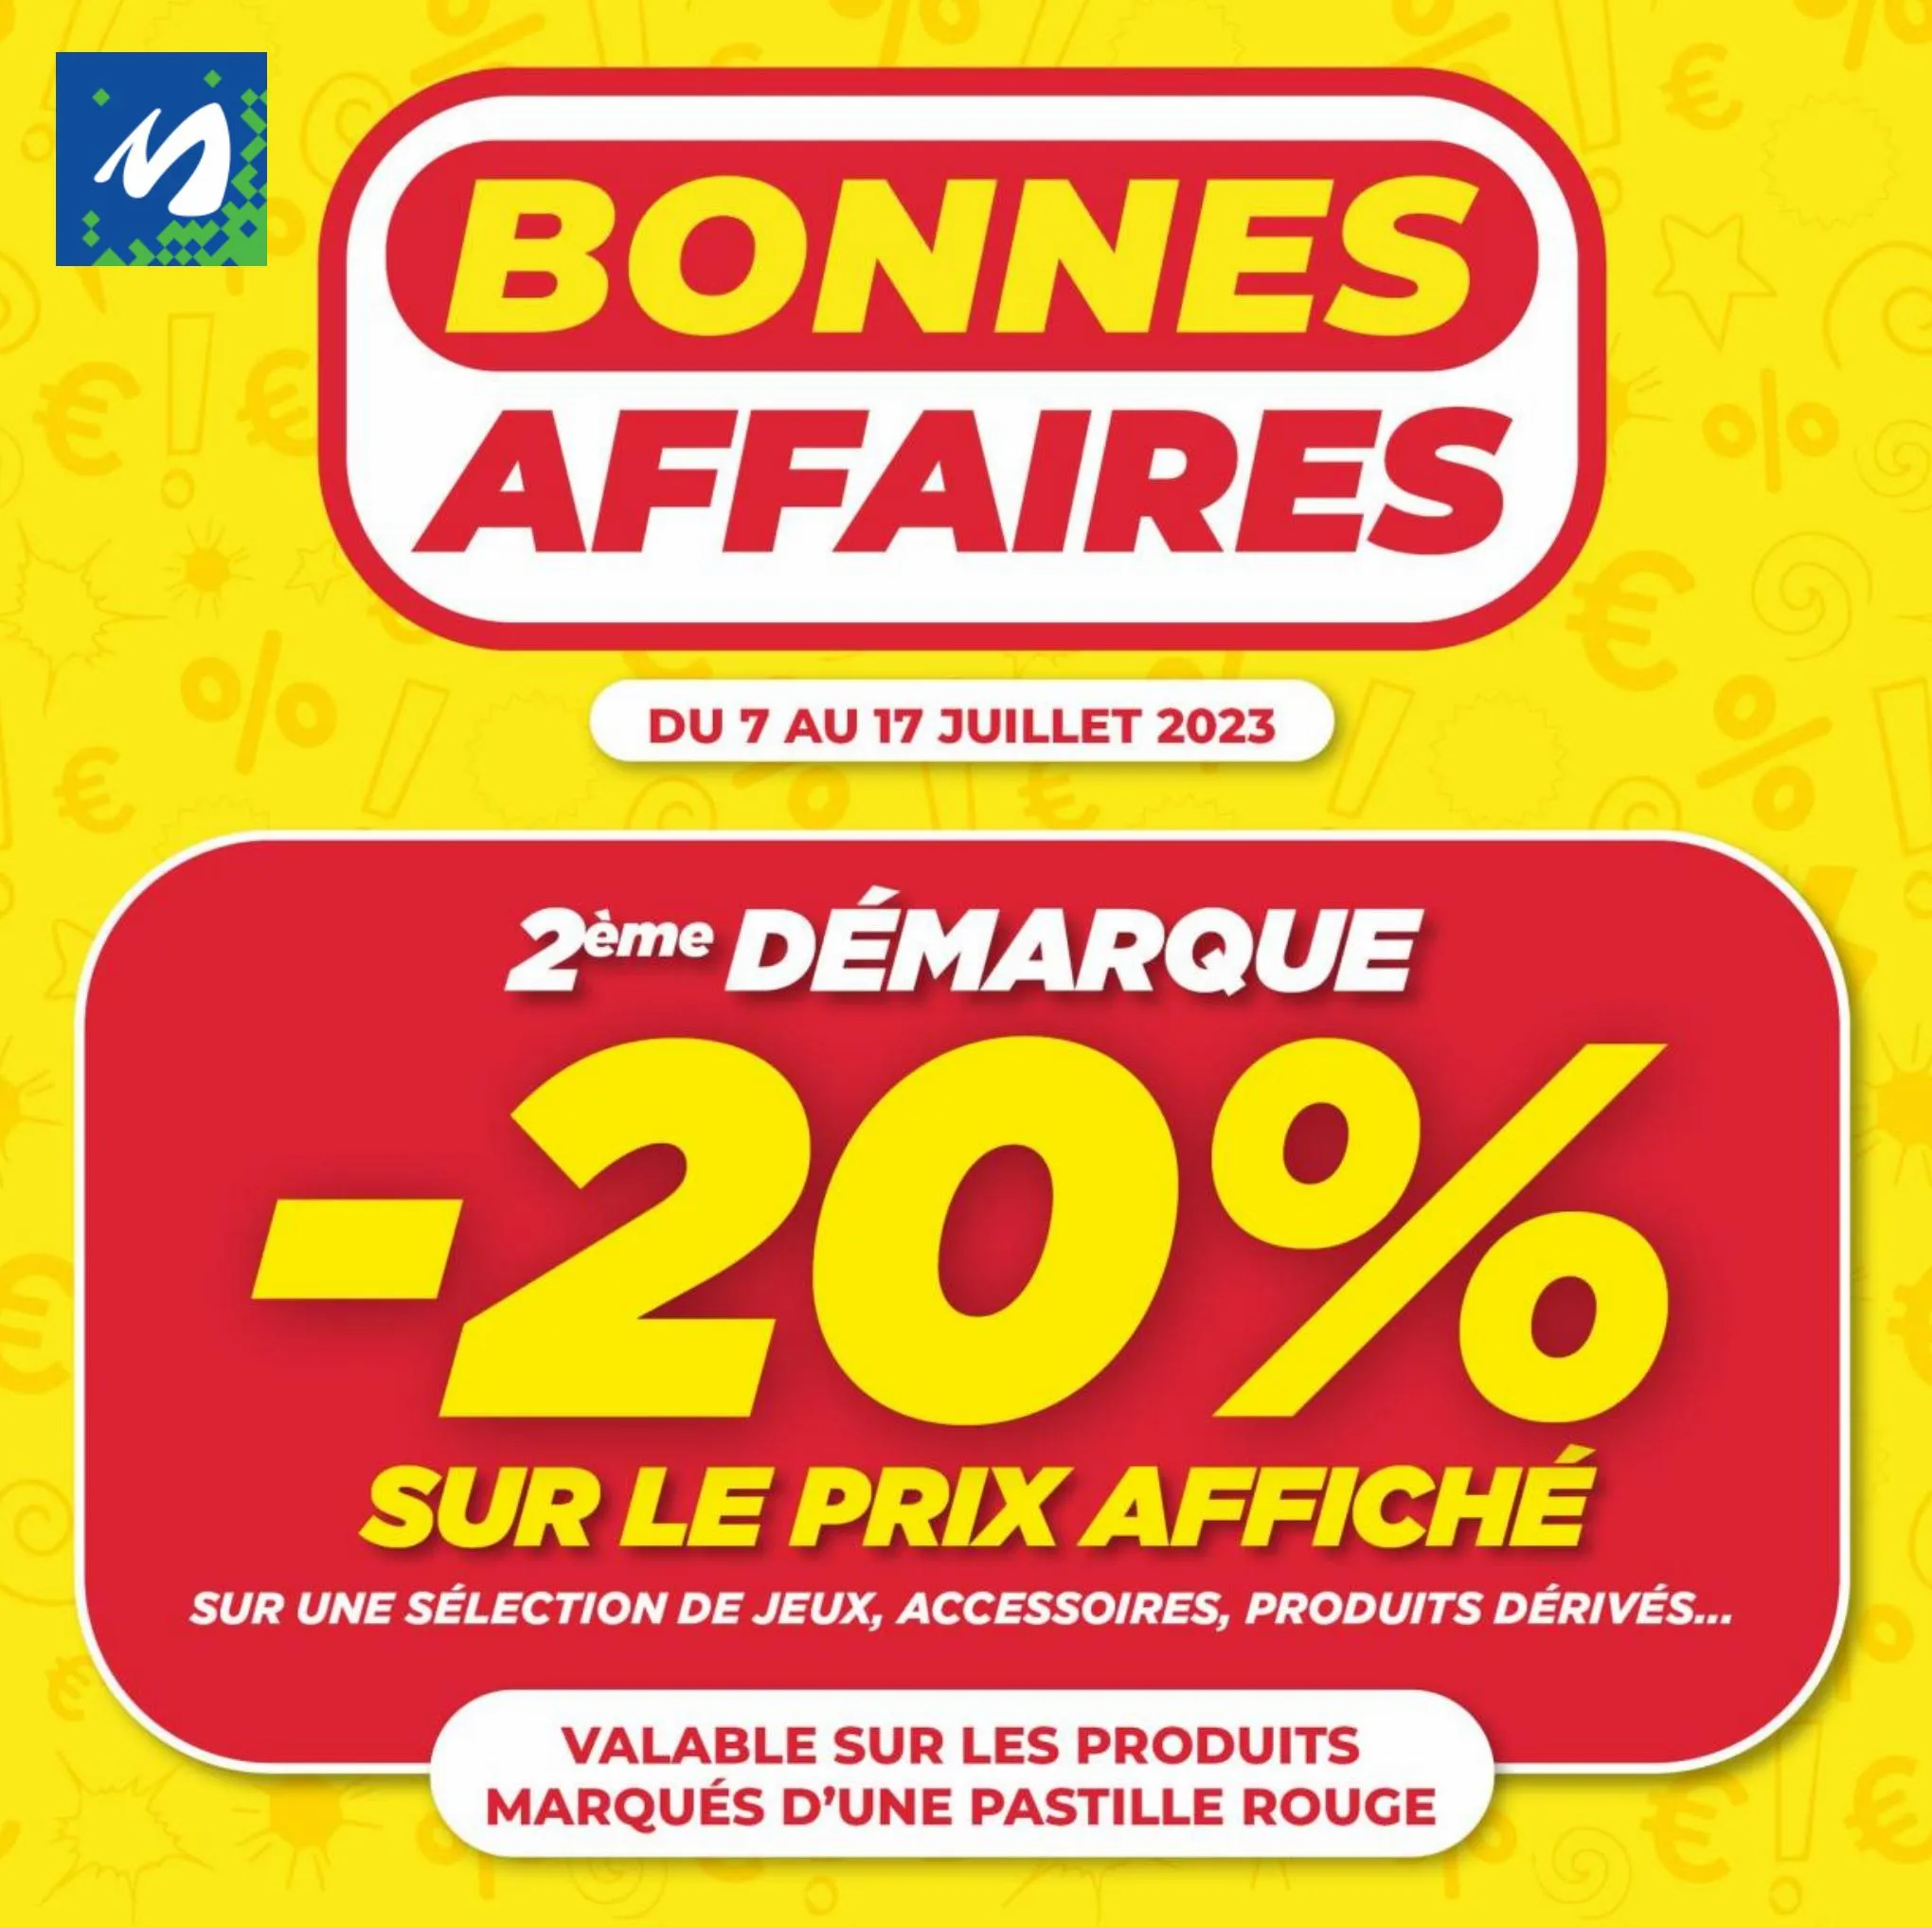 Catalogue Bonnes Affaires 2 ème Démarque -20%*, page 00001